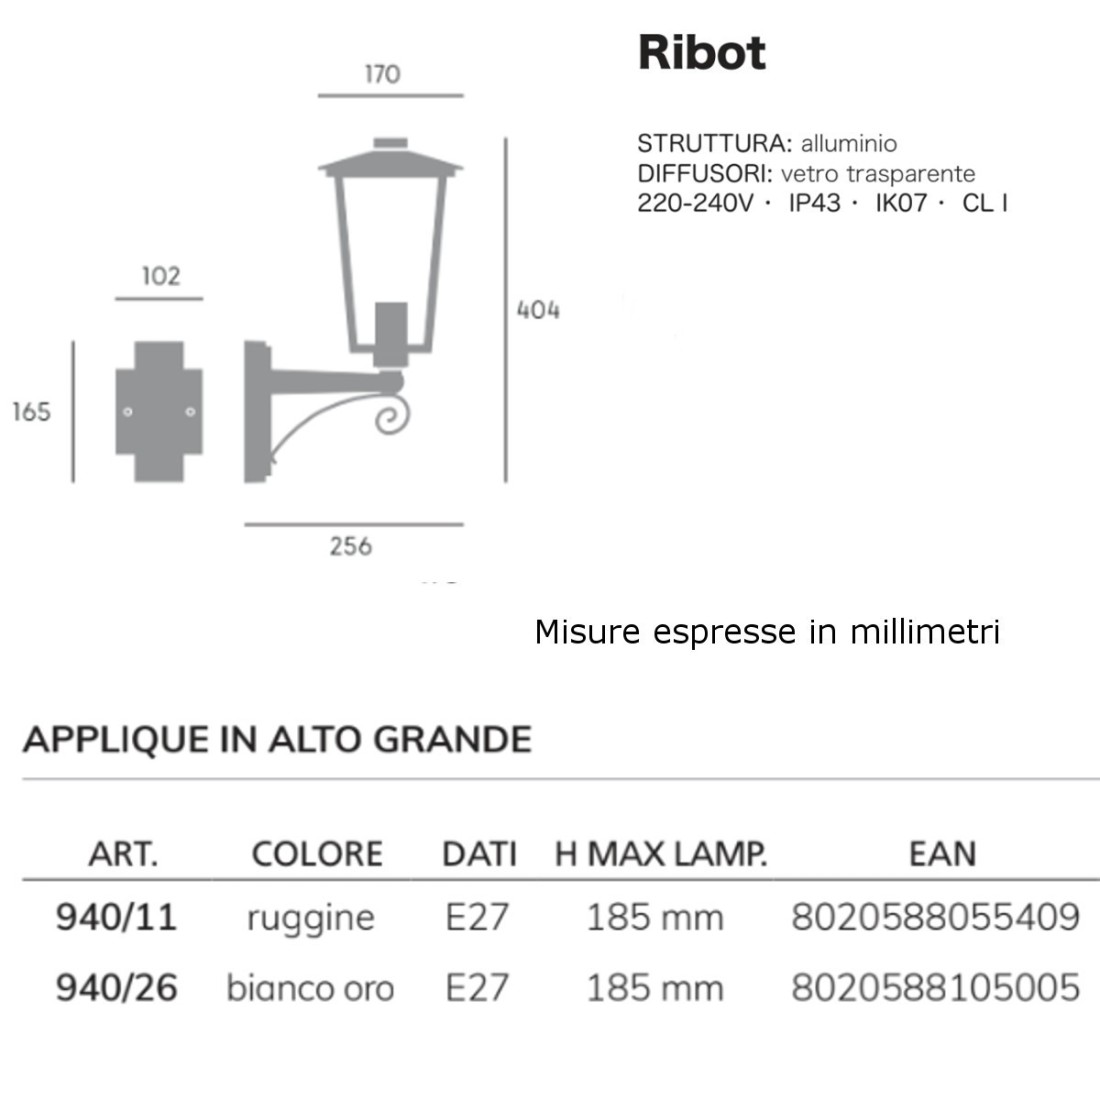 Applique classico Livos RIBOT 940 E27 LED